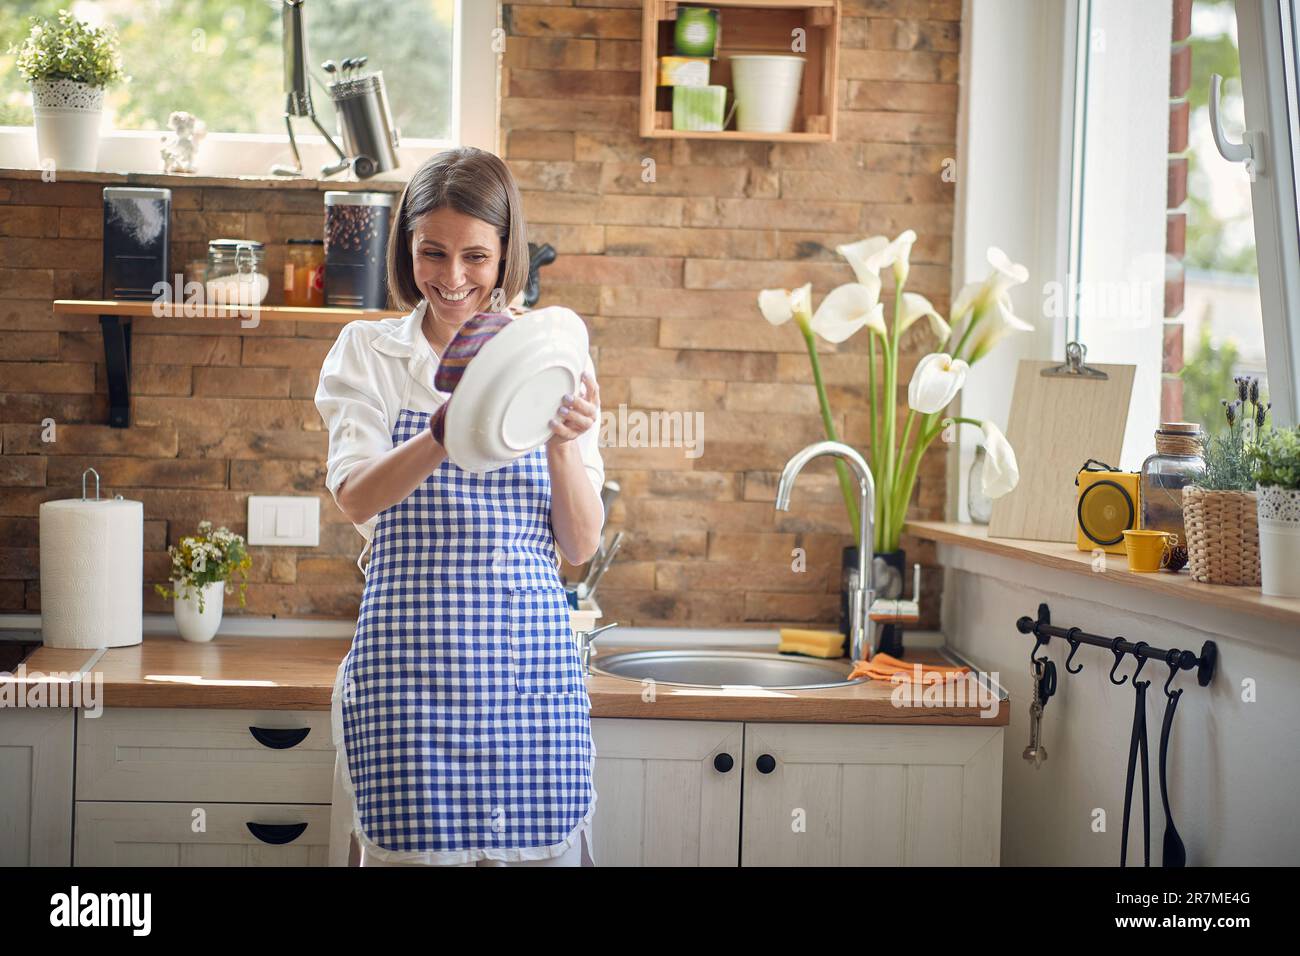 Eine strahlende Frau füllt den Raum mit ihrem strahlenden Lächeln, während sie fleißig sauberes Geschirr nach einem zufriedenstellenden Waschgang abwischt. Stockfoto